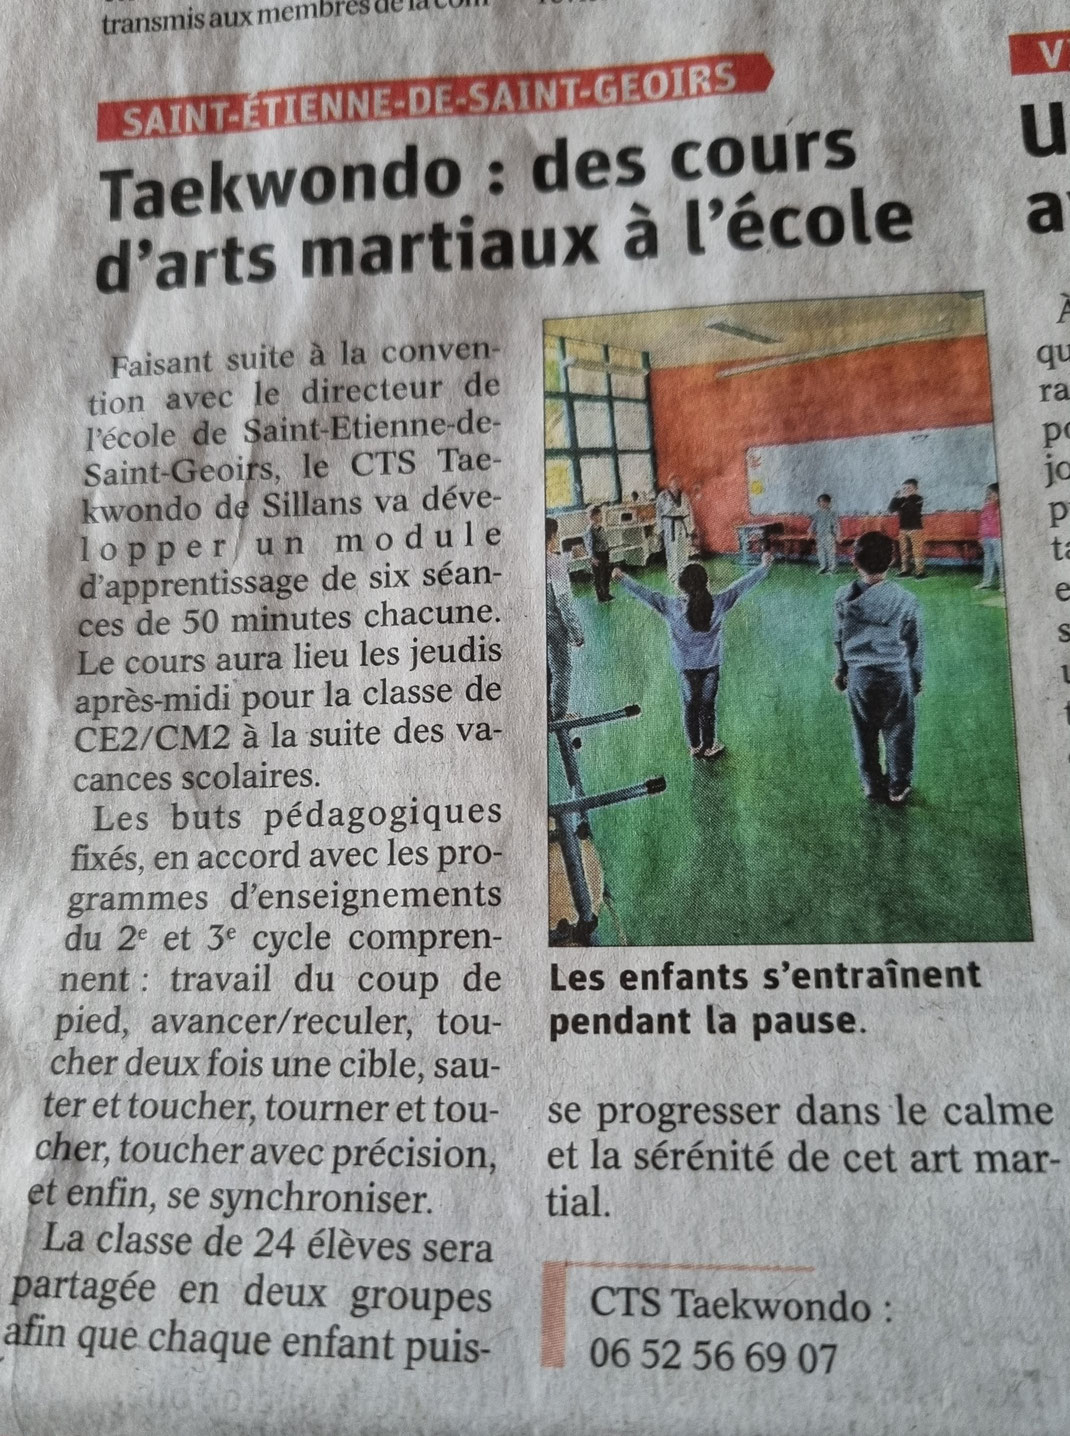 CTS Taekwondo: Le CTS organise des initiations à l'école de Saint-Etienne-de-Saint-Geoirs